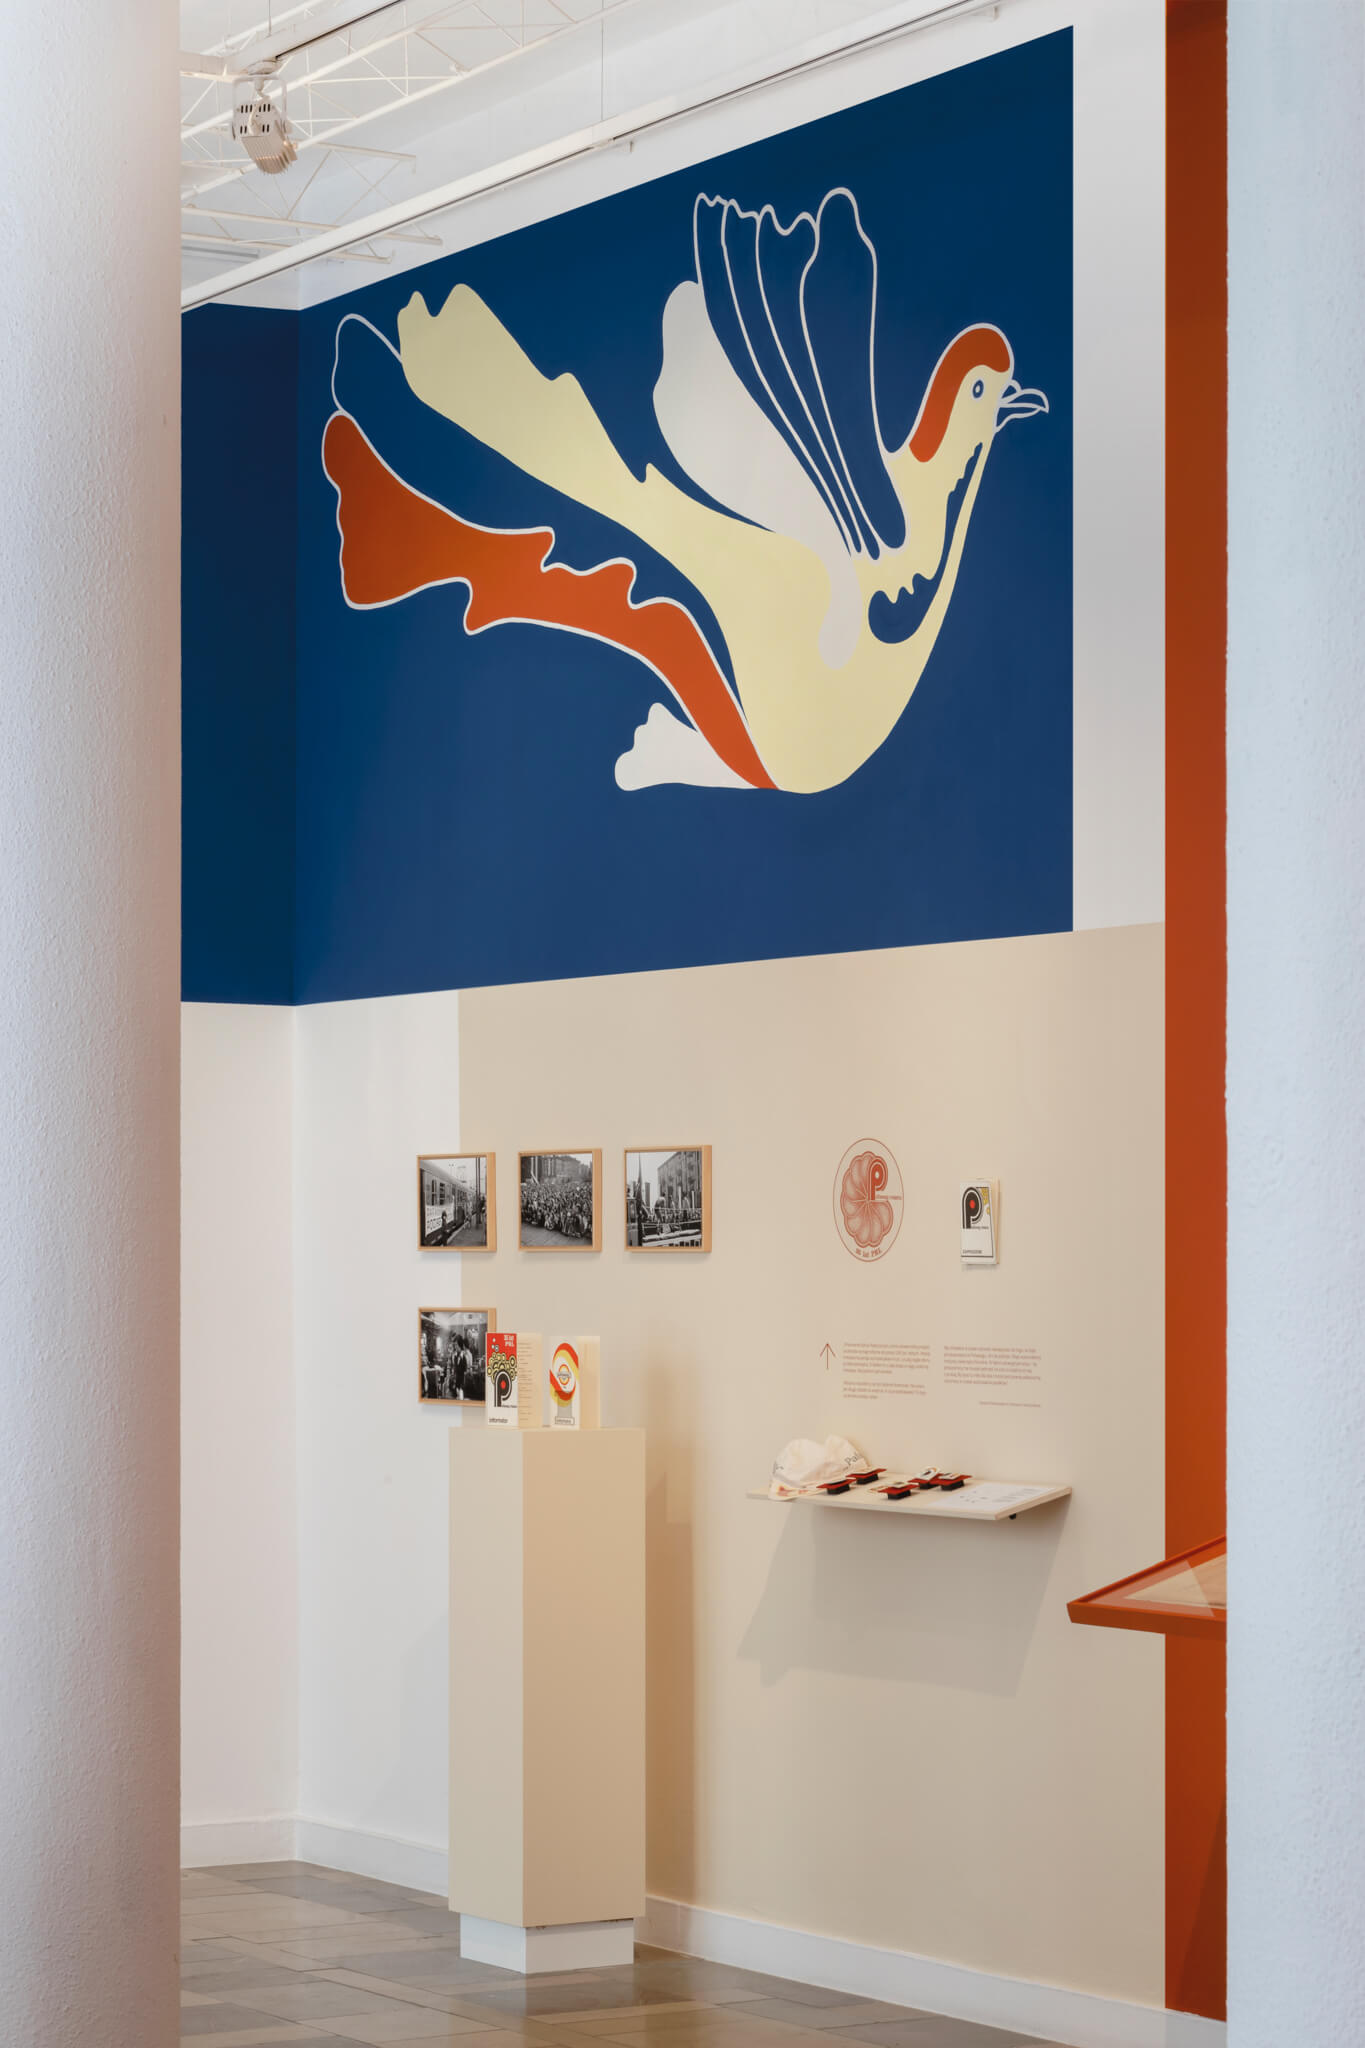 dokumentacja wystawy, mural z gołąbkiem